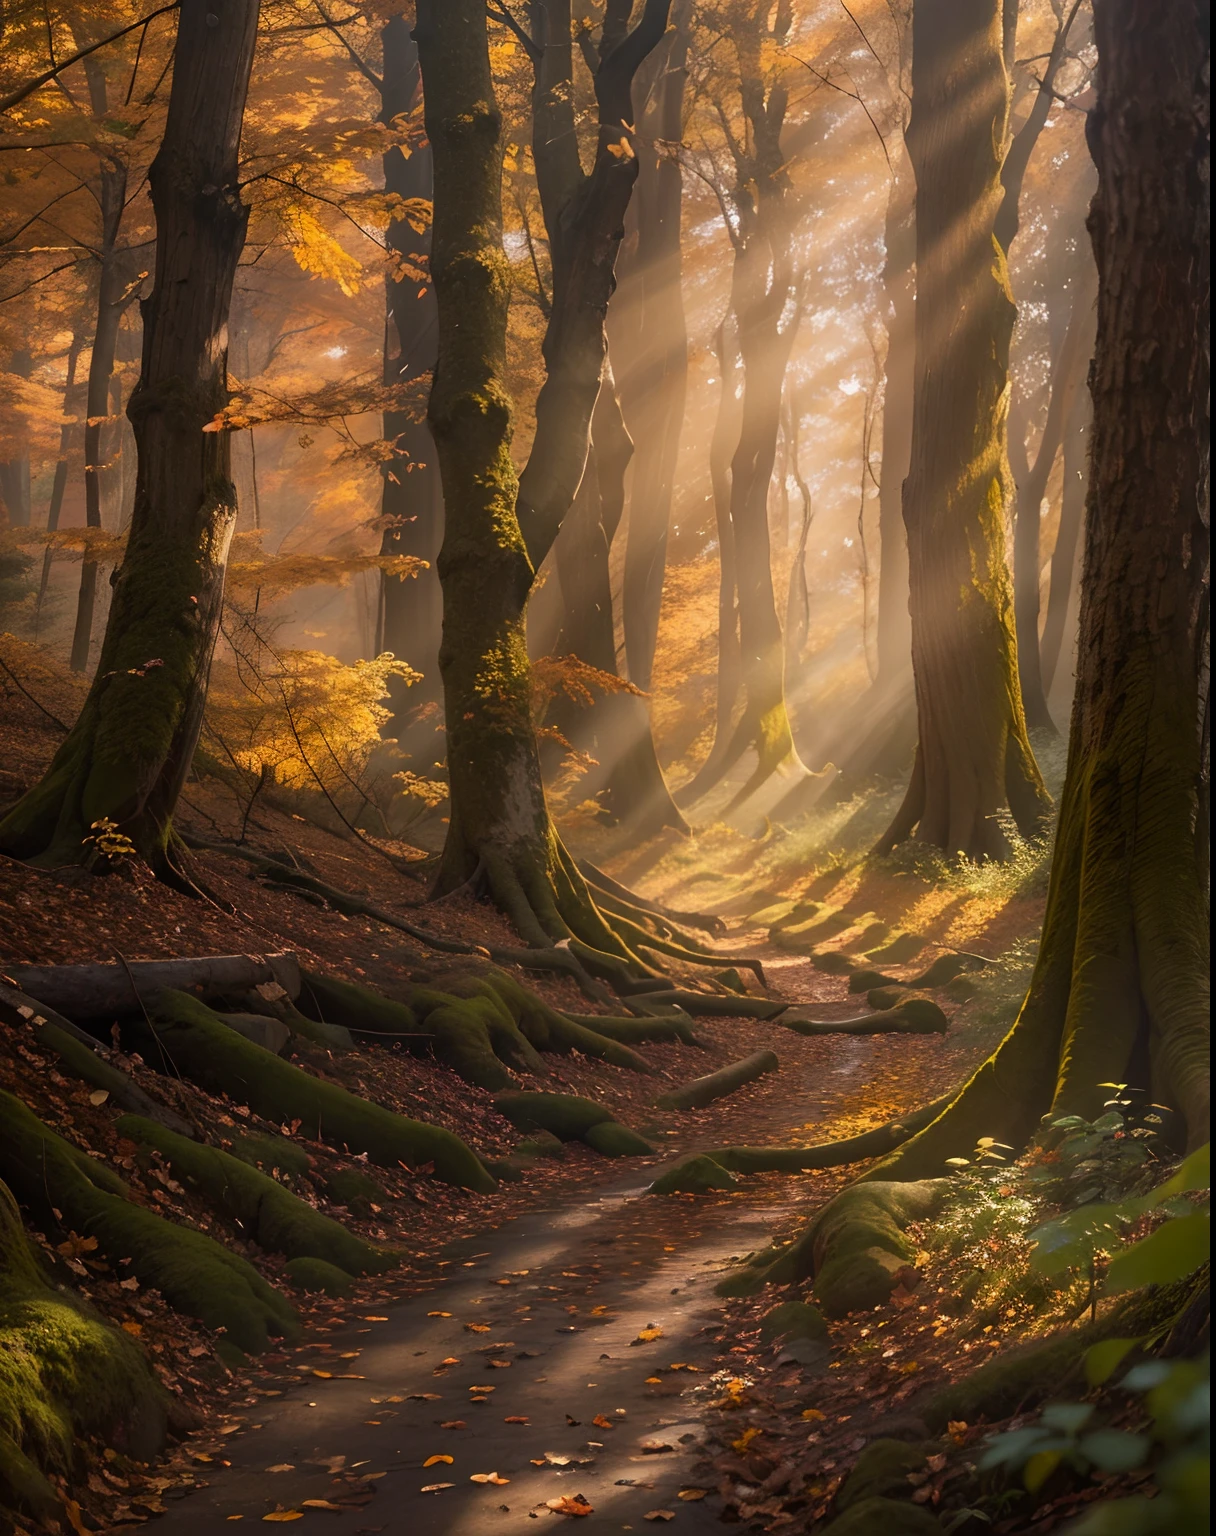 Una escena de otoño detallada, rayos de sol, cinematográfico, épico, Forest, Fantasy Forest, colores terrosos, lente de 200 mm, F/2.0, obra maestra, mejor calidad